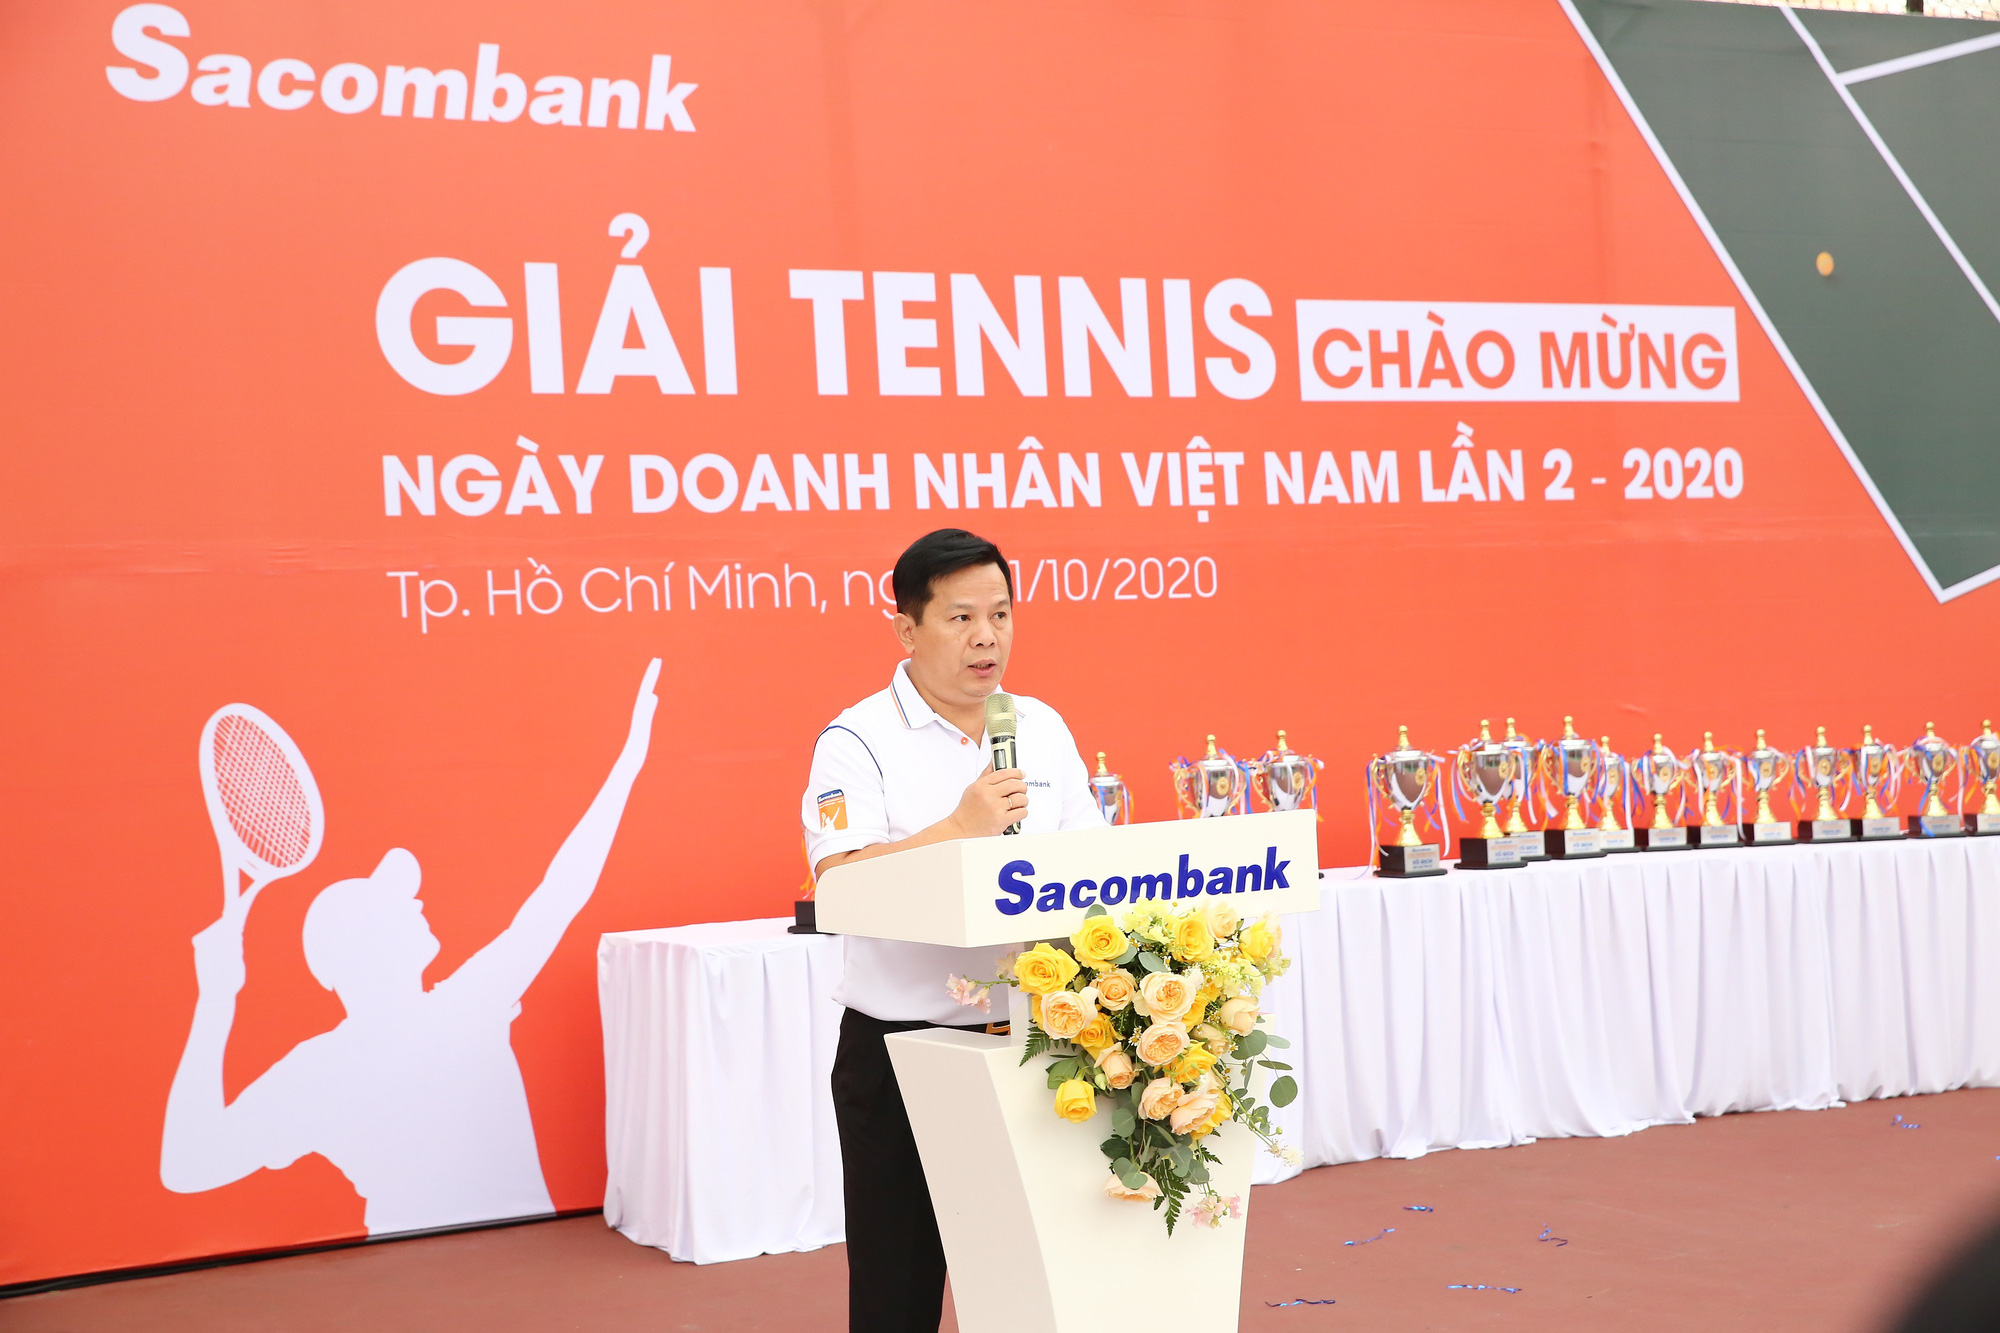  Sacombank tổ chức giải tennis chào mừng ngày Doanh nhân Việt Nam năm 2020 - Ảnh 3.